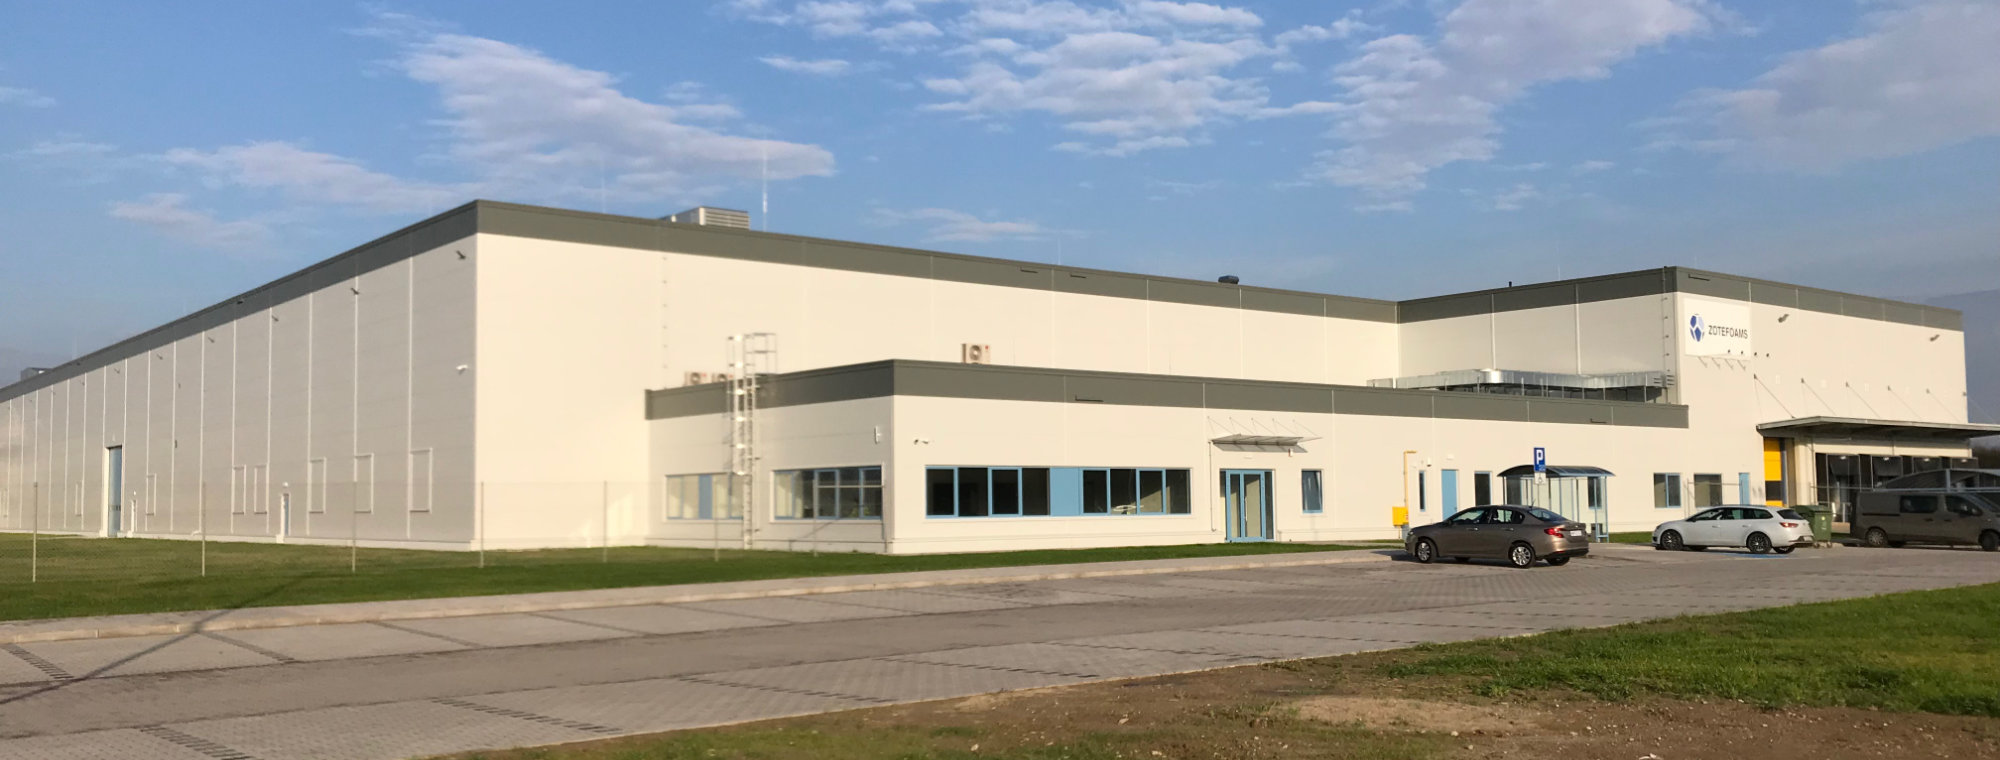 Zotefoams production facility Poland